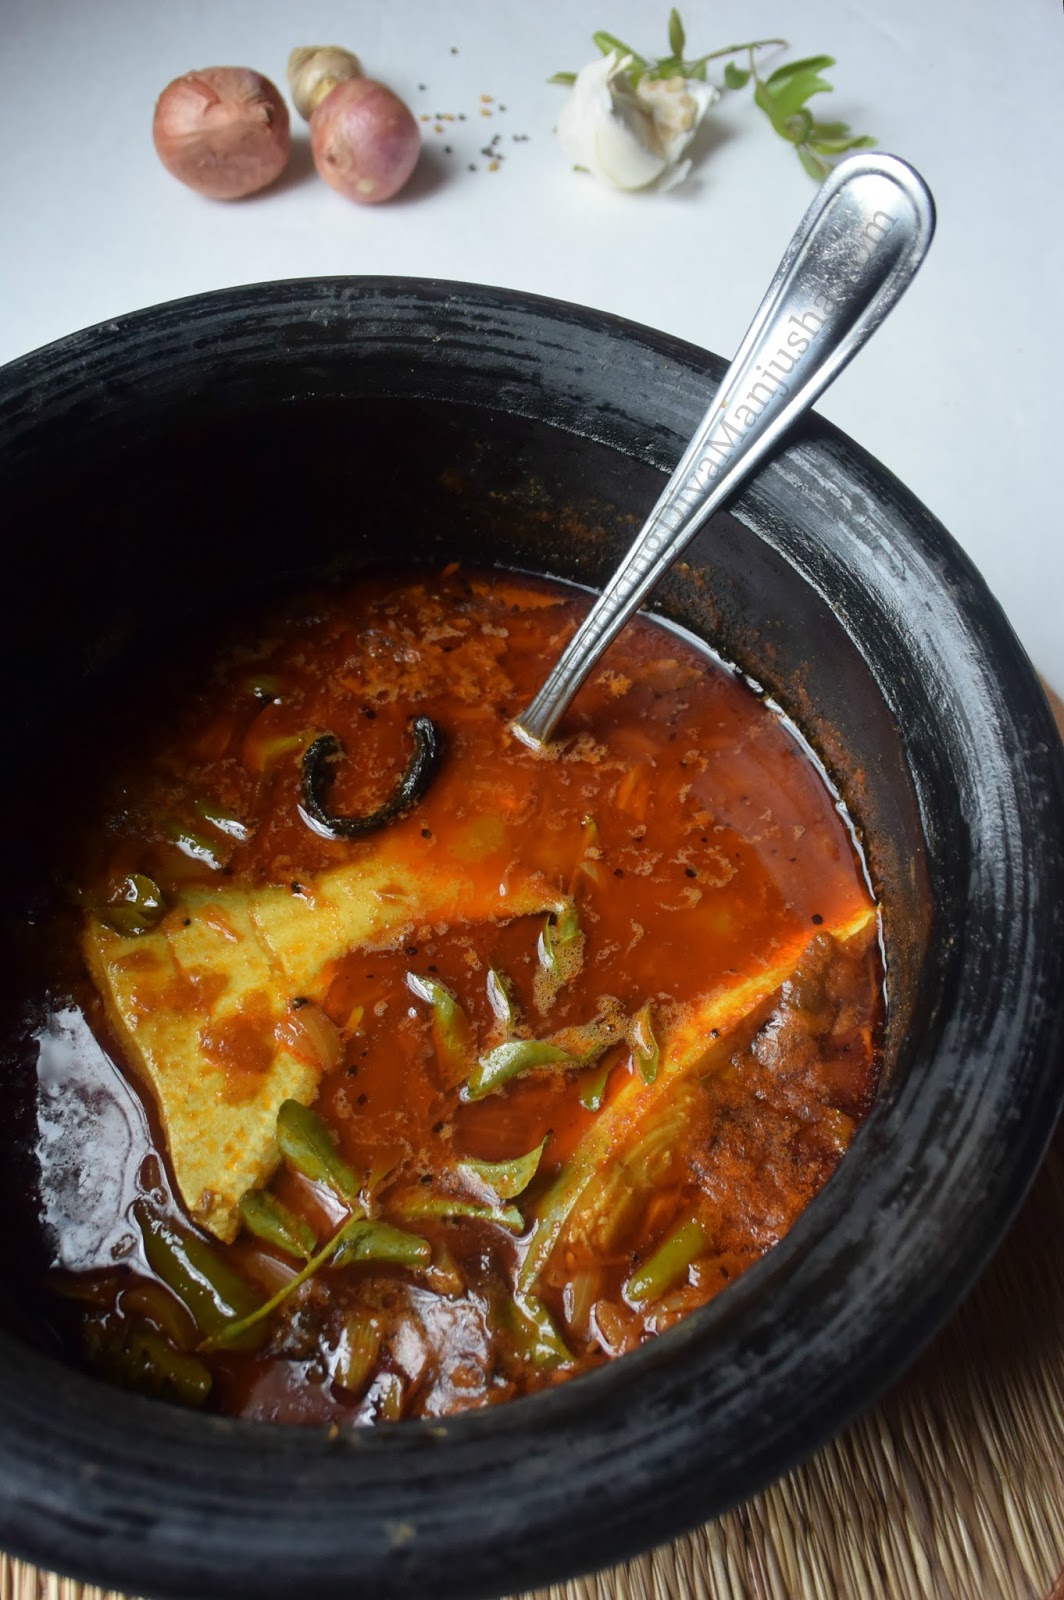 Kottayam fish curry |Nadan fish curry from Kerala